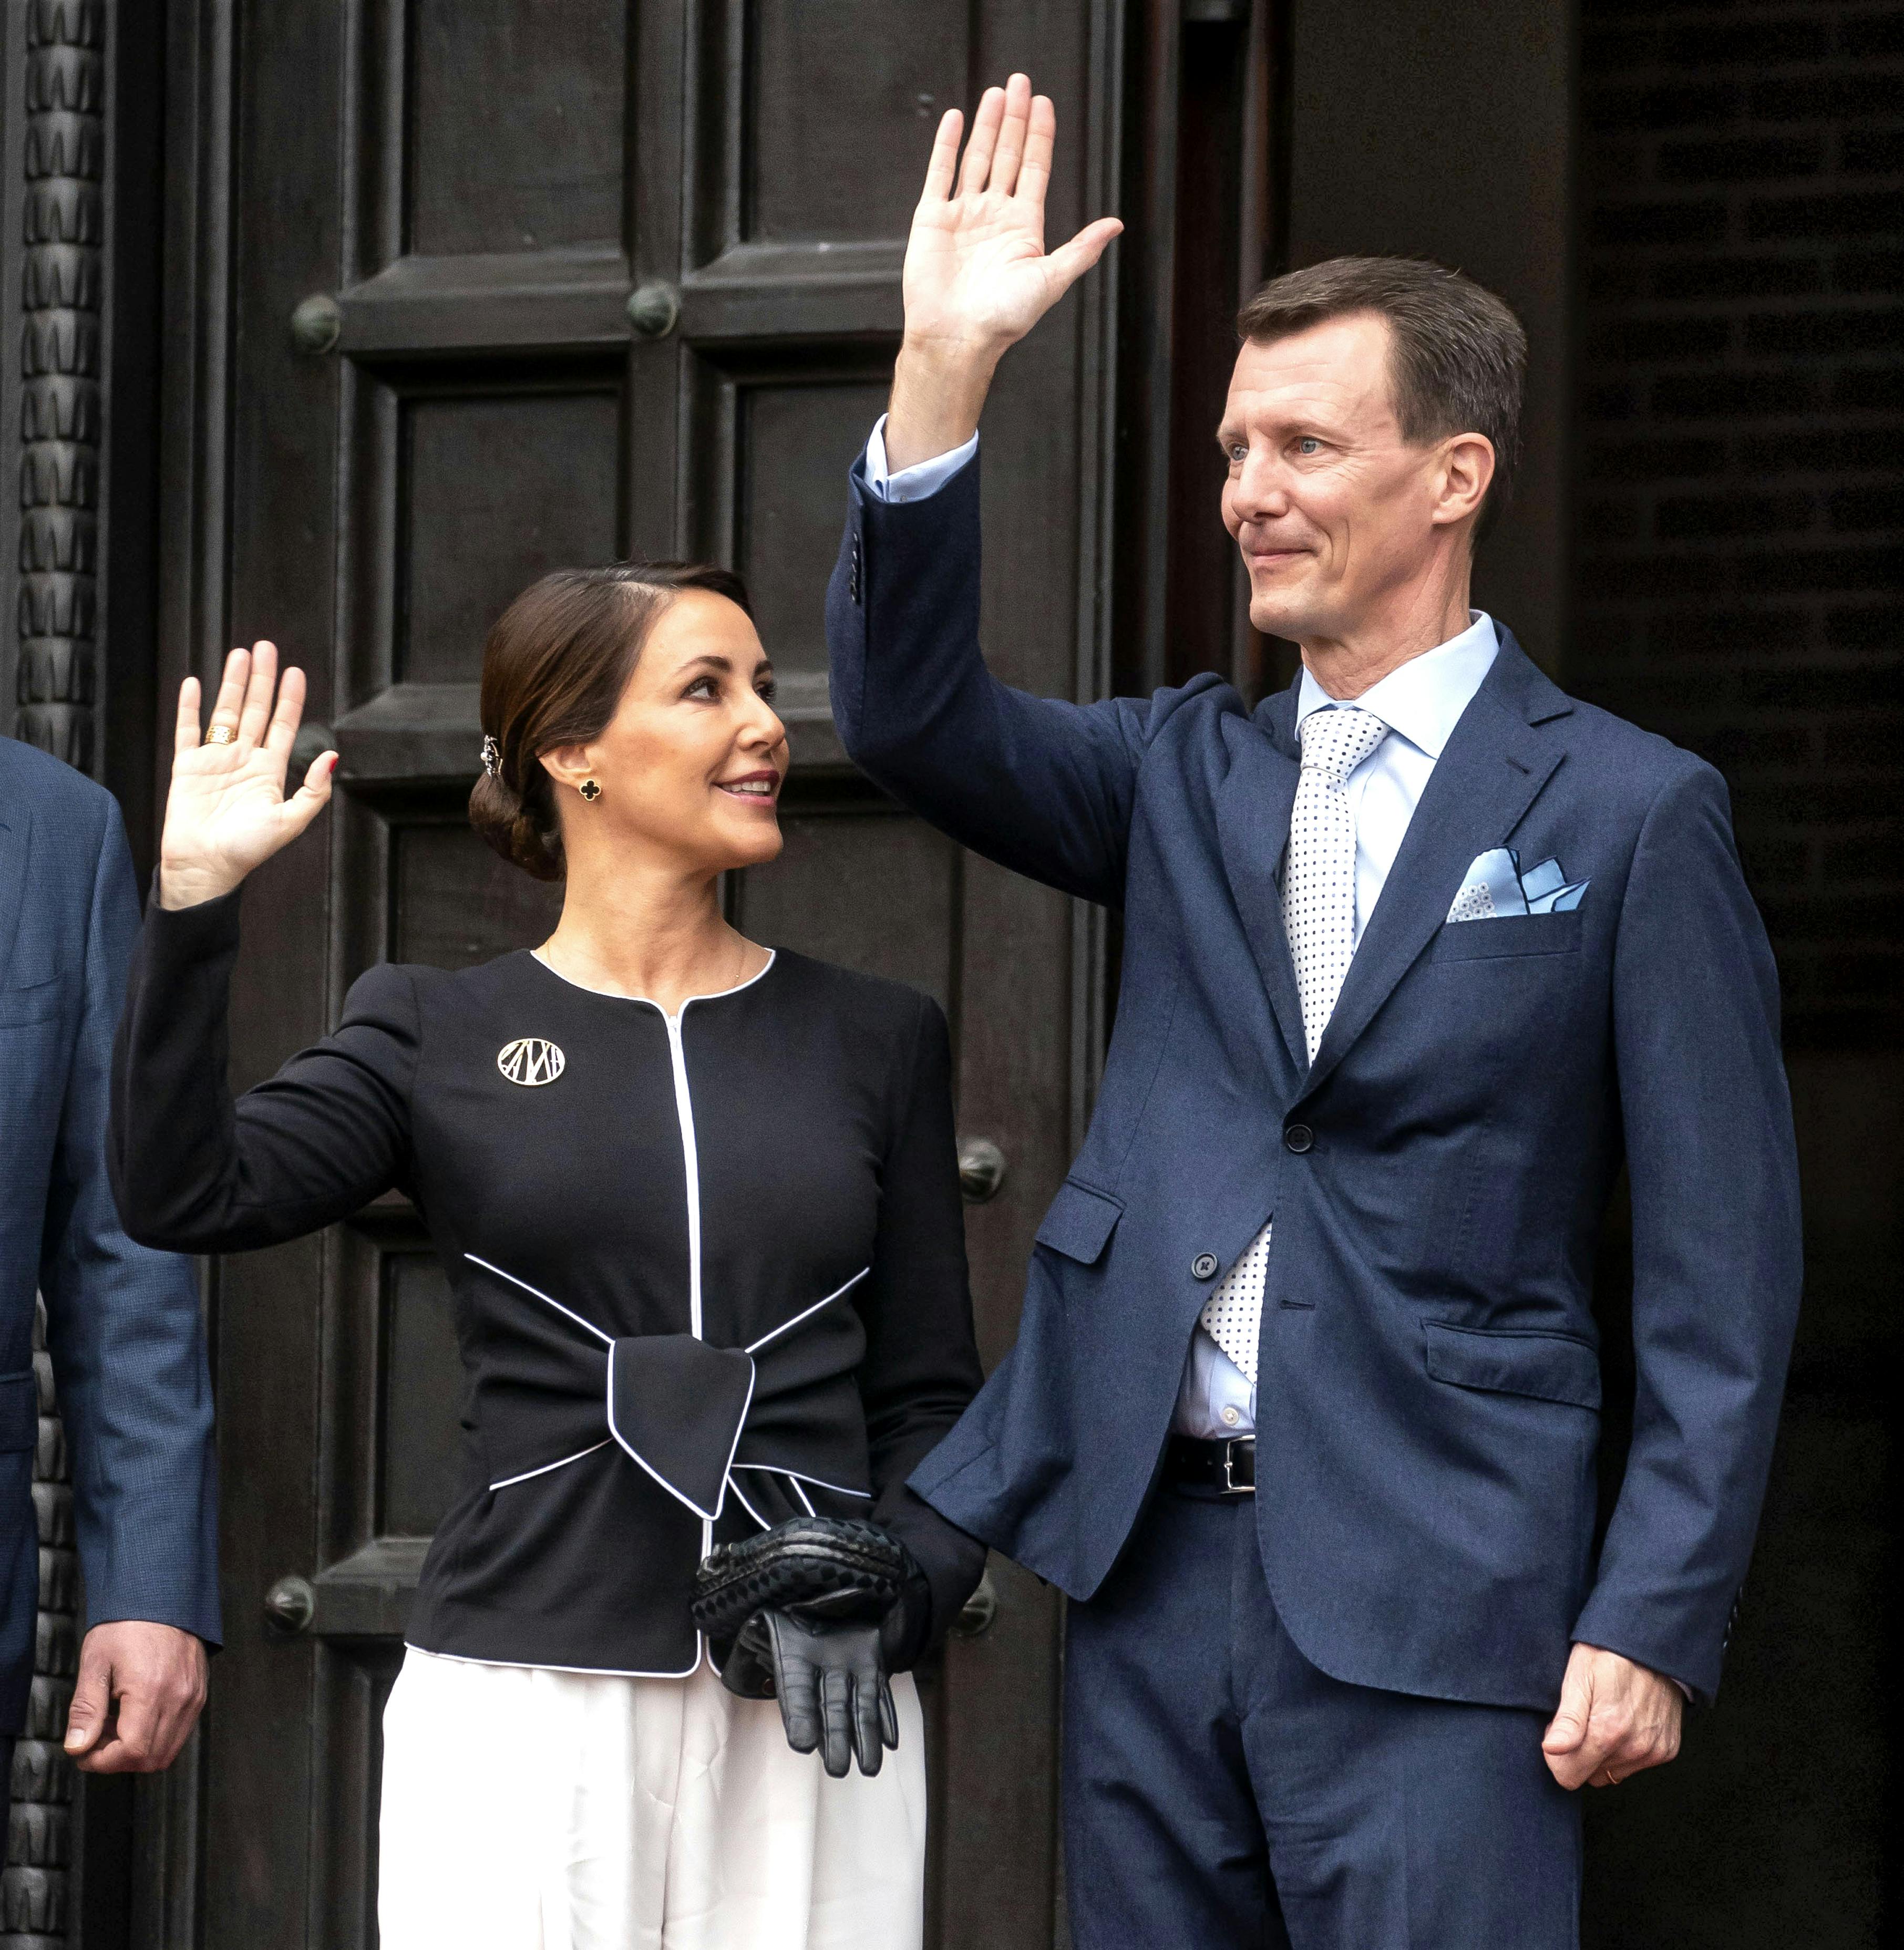 Da dronning Margrethe fejrede sin 50-års regeringsjubilæum på Københavns Rådhus, var Joachim og Marie med som gæster. Dette var første gang, siden dronningen satte gang i en større krise i kongehuset, at de var samlet.&nbsp;
